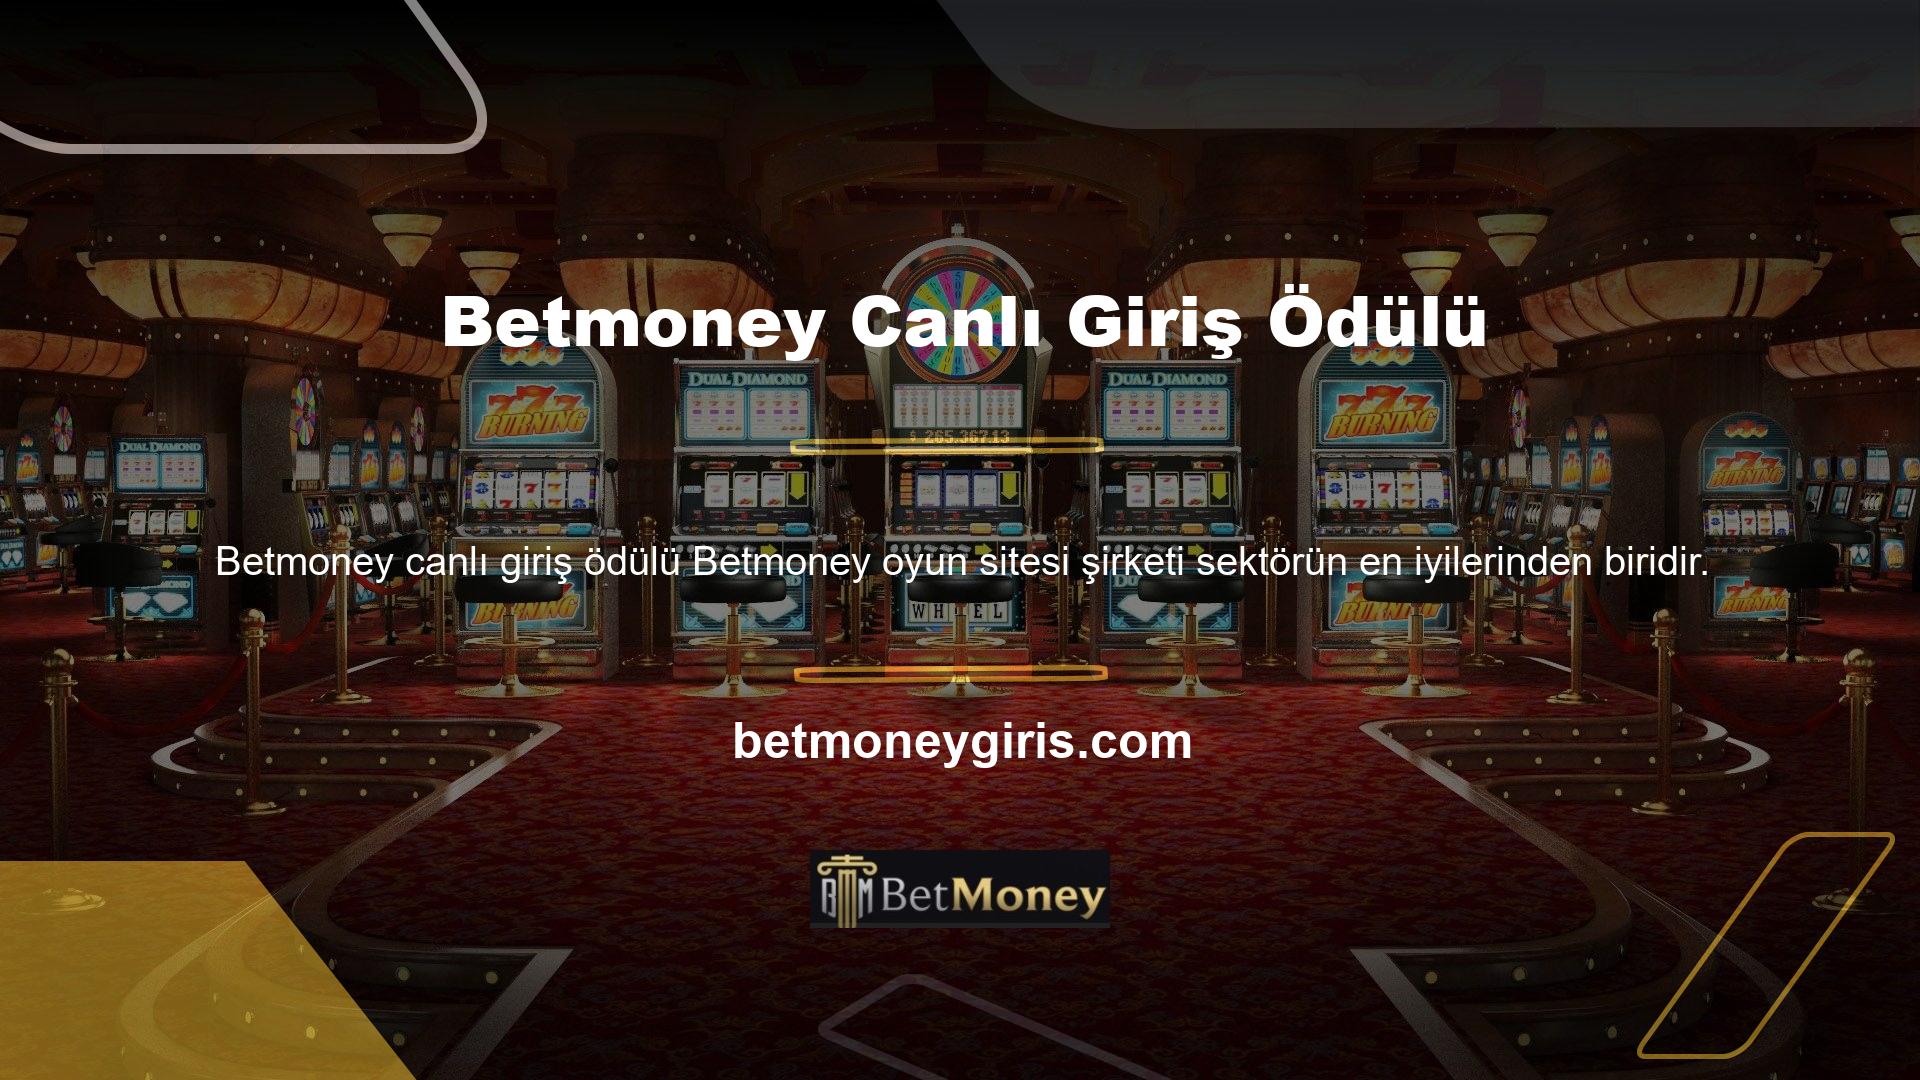 Betmoney canlı giriş bonus bahis sitesi şu anda birçok bahisçi tarafından kullanılmaktadır